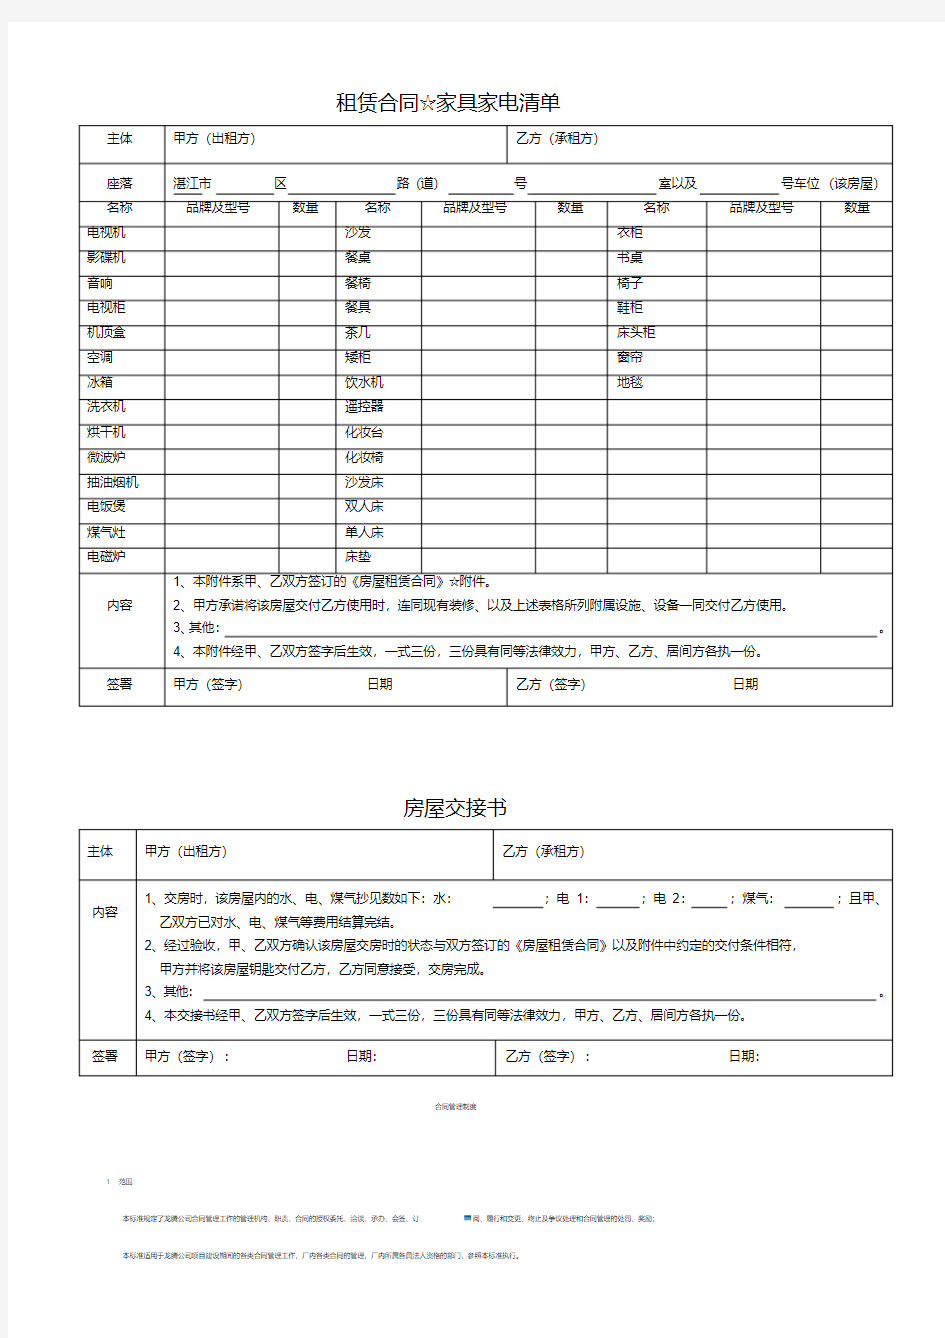 房屋租赁附件(家具清单_房屋交接书).pdf